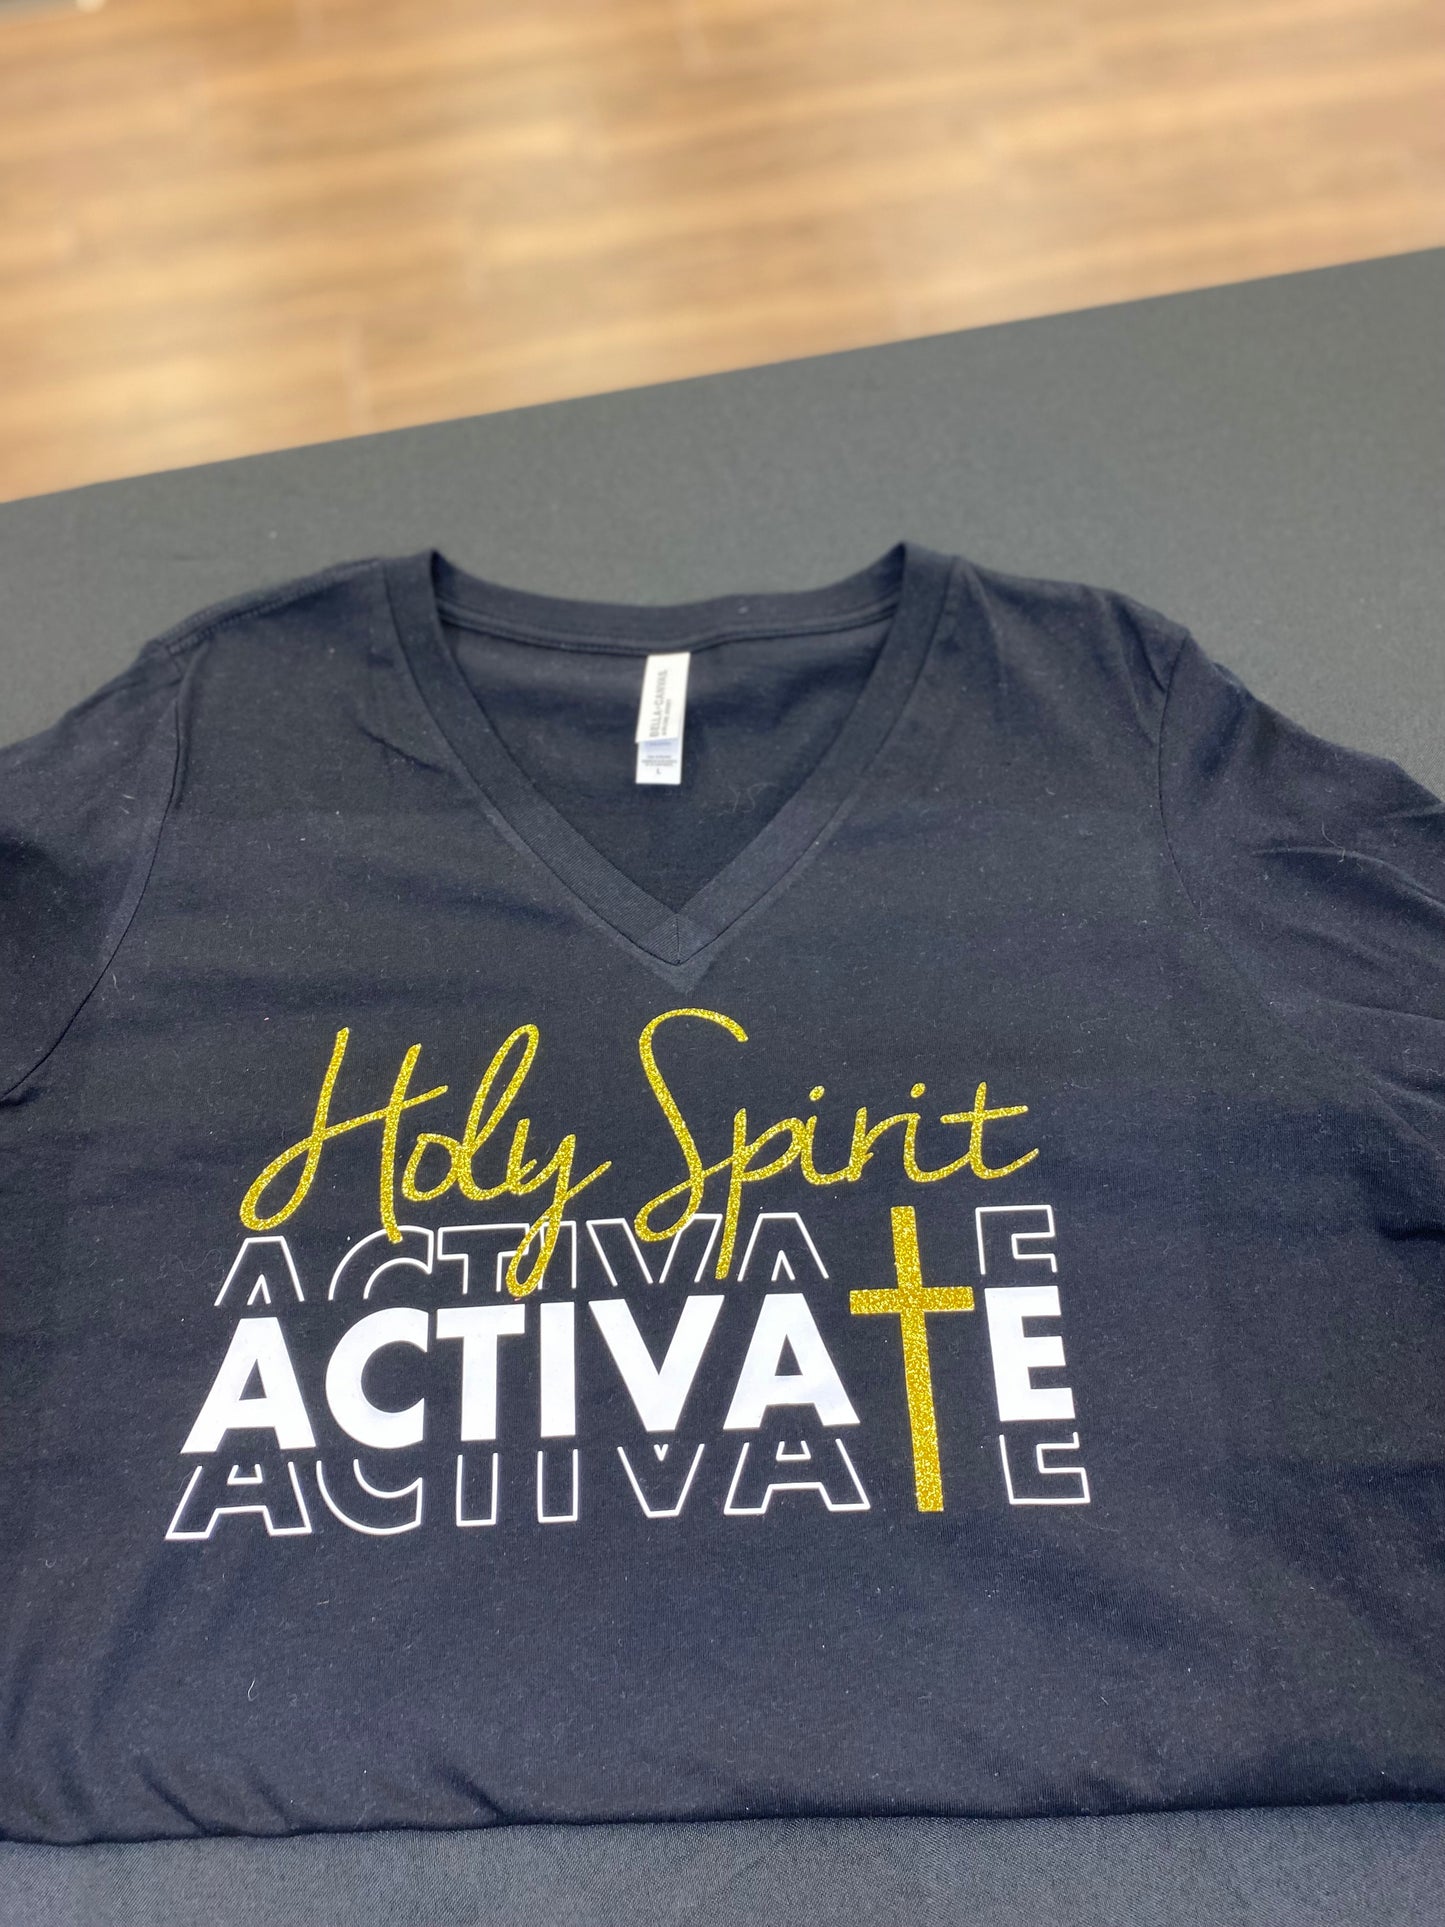 Holy Spirit Activate - Glitter